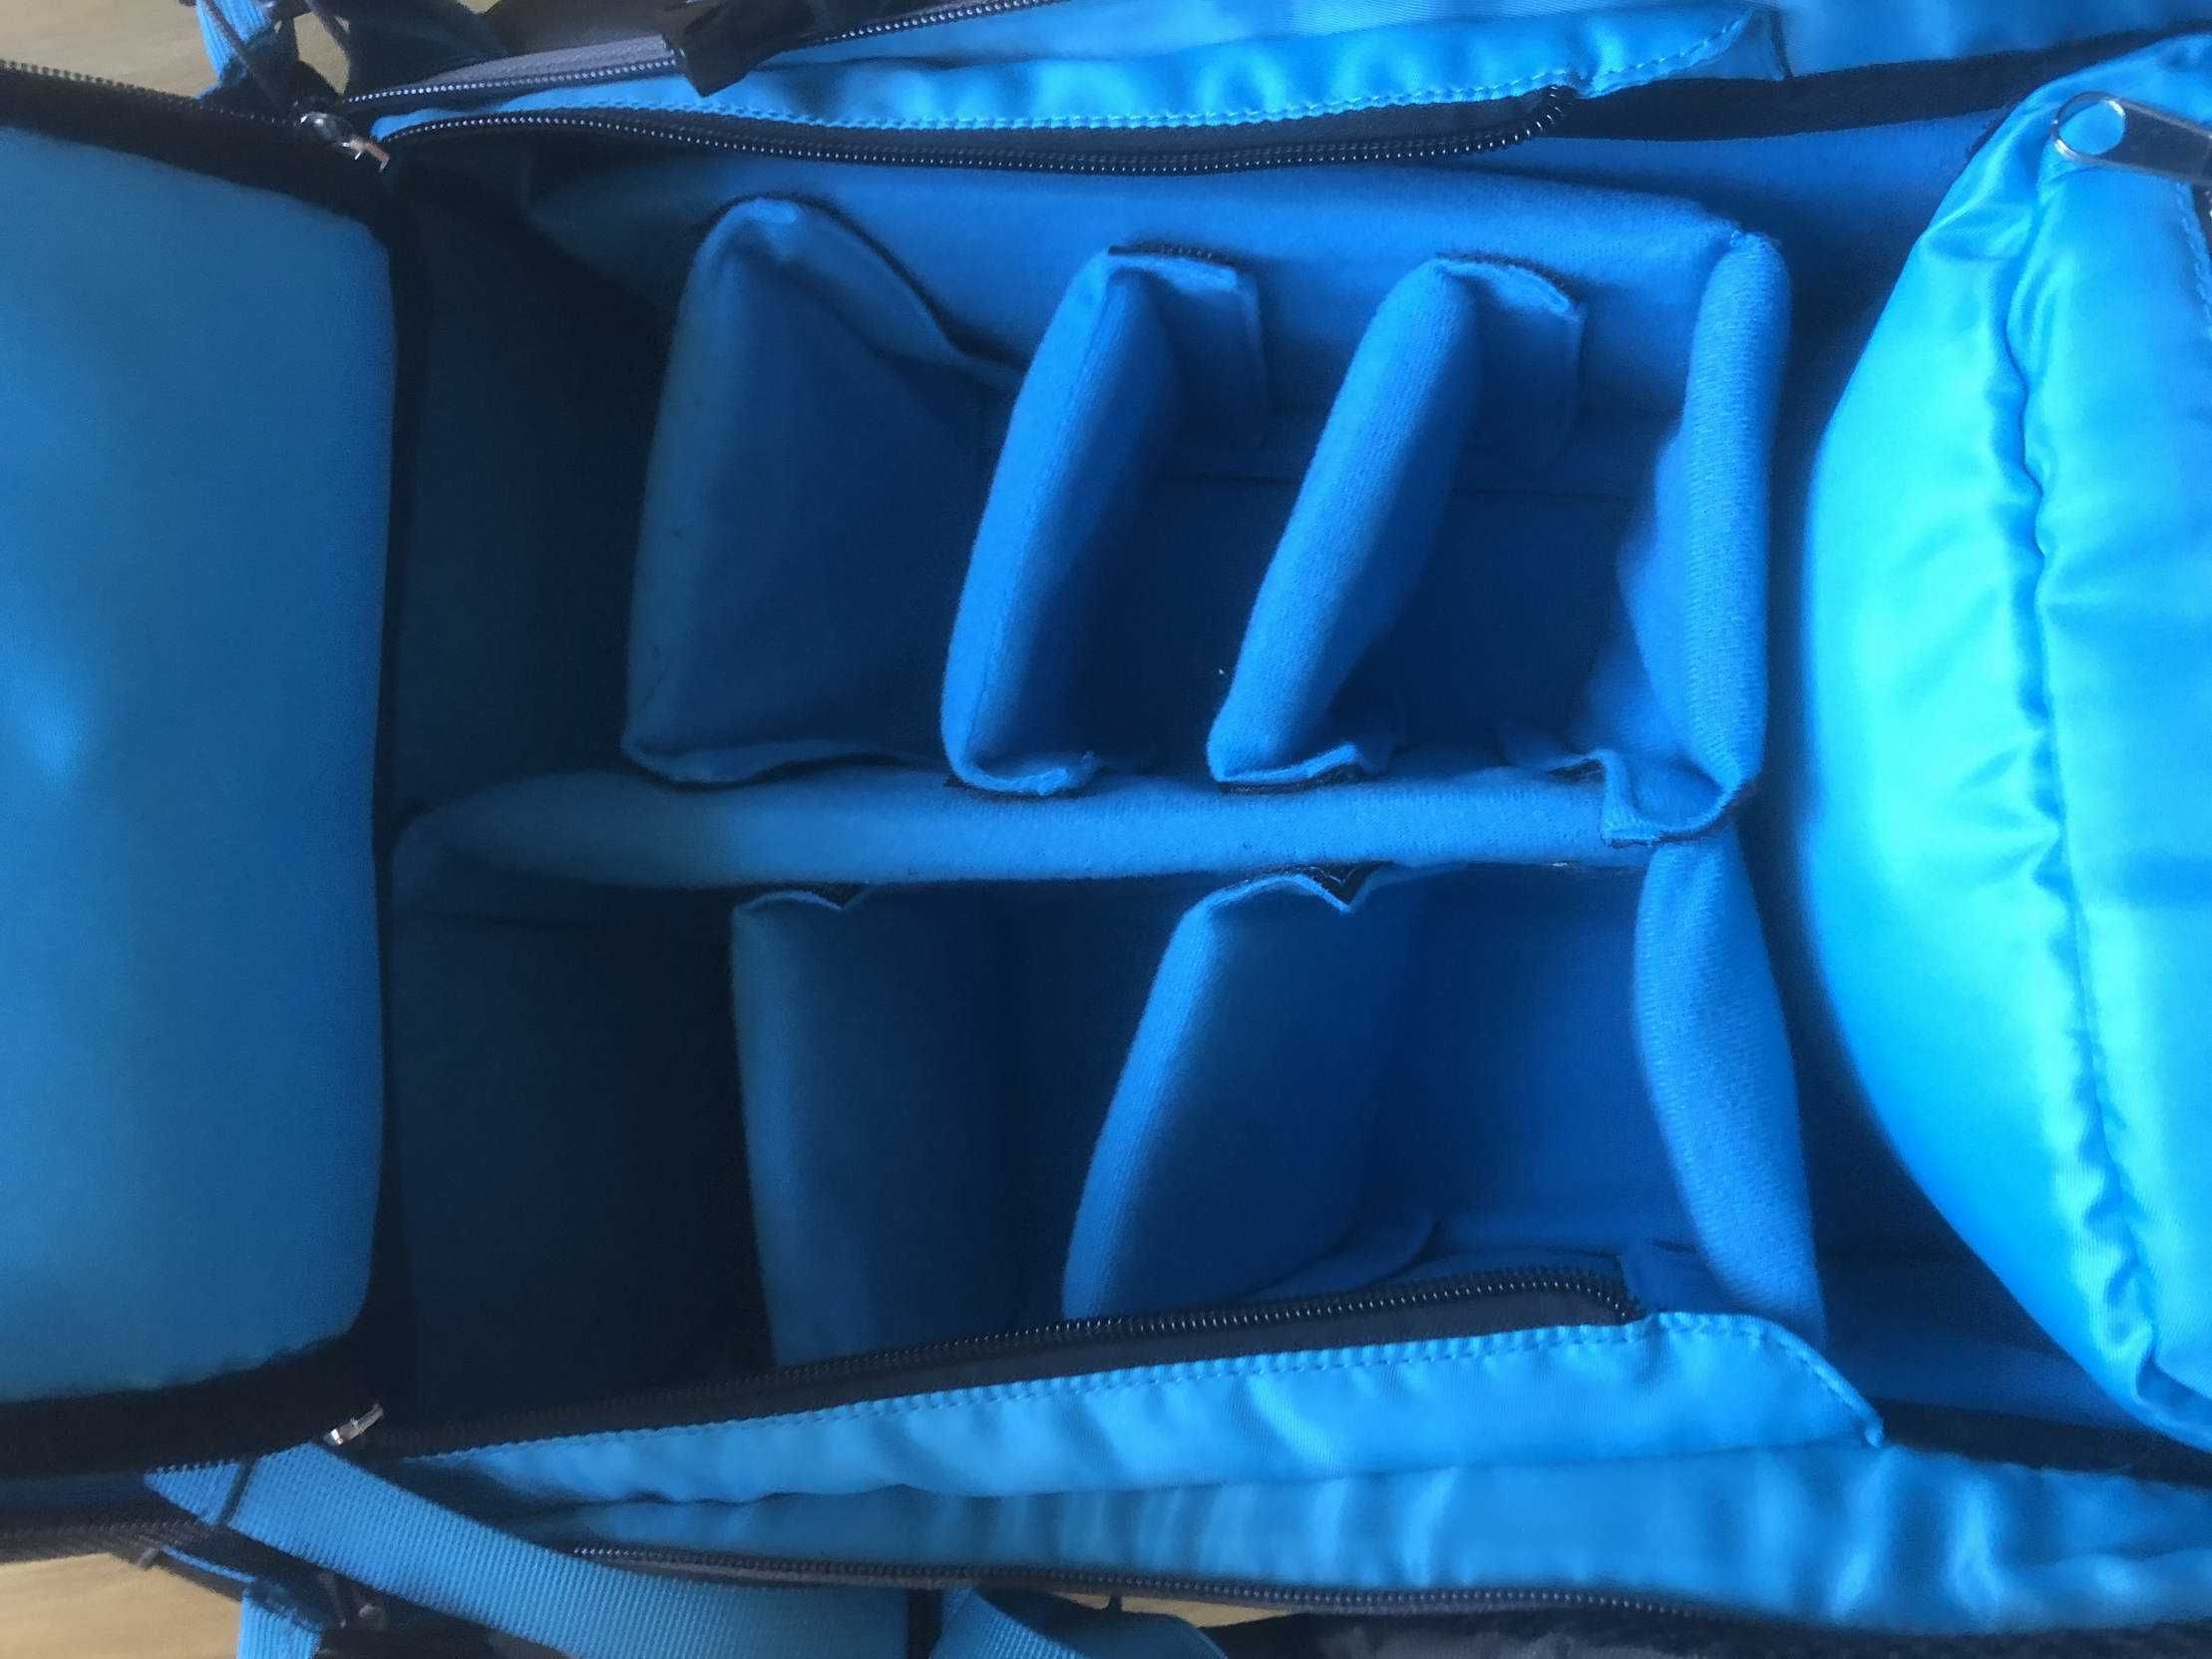 Plecak fotograficzny Dicallo szaro - niebieski, profesjonalny, nowy